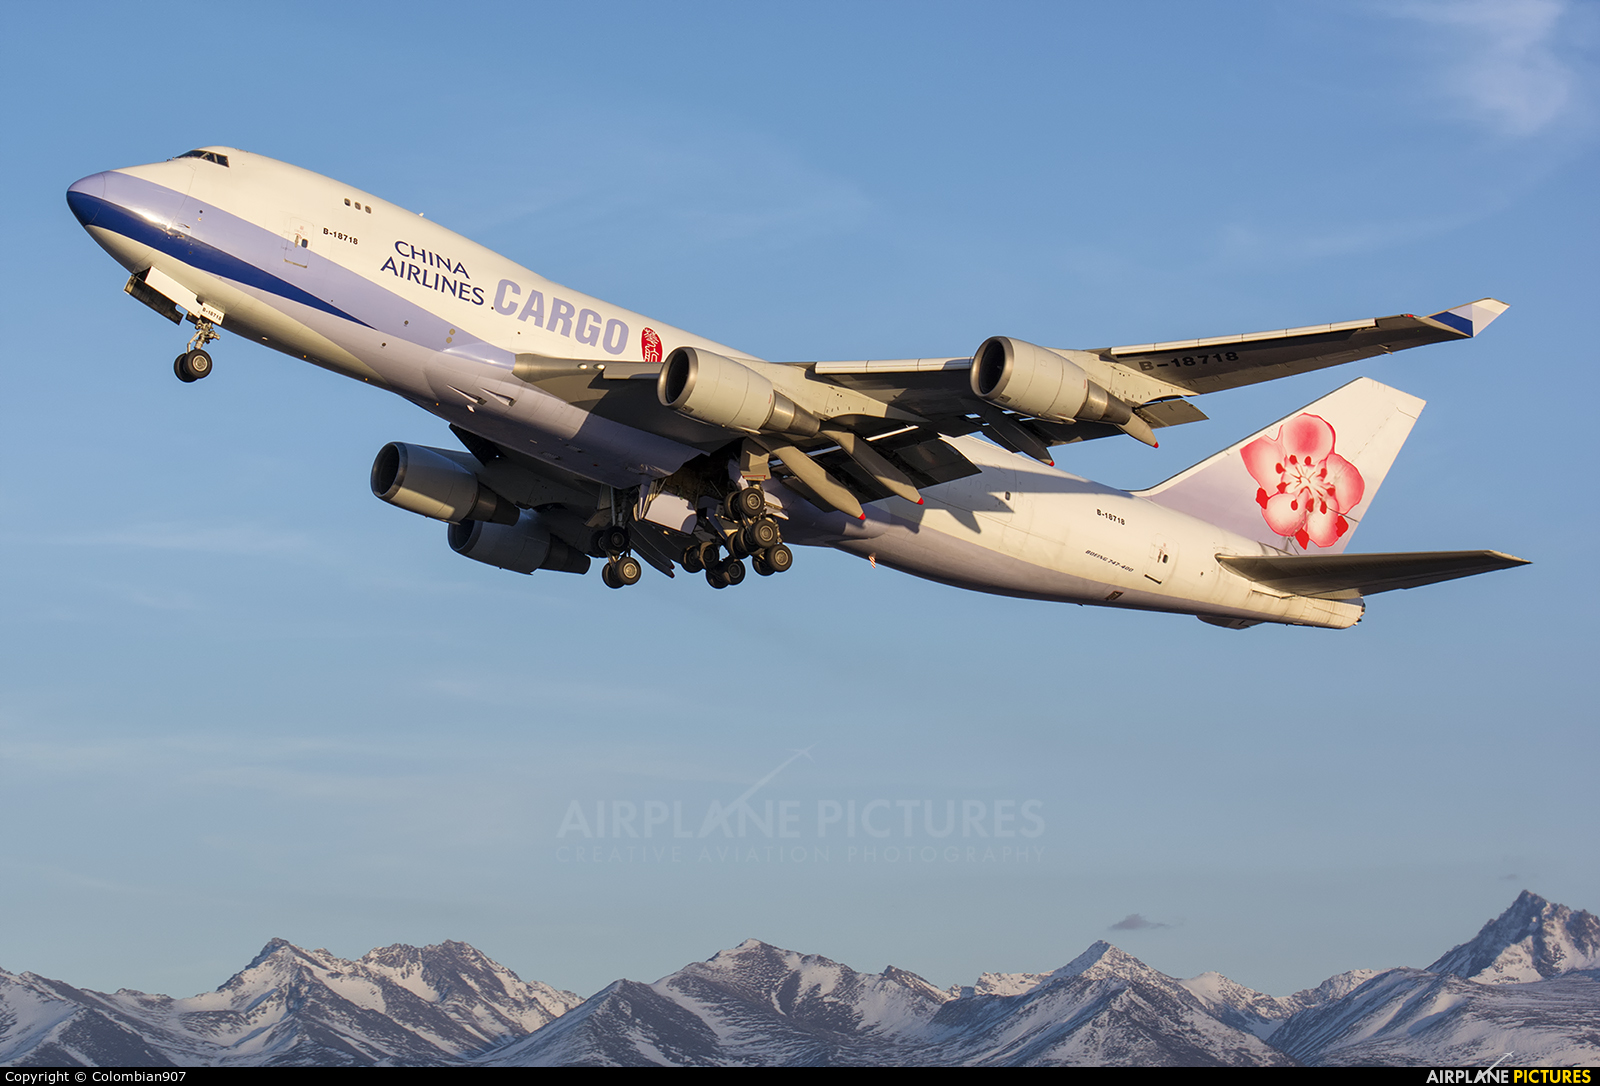 China Airlines Cargo B-18718 aircraft at Anchorage - Ted Stevens Intl / Kulis Air National Guard Base